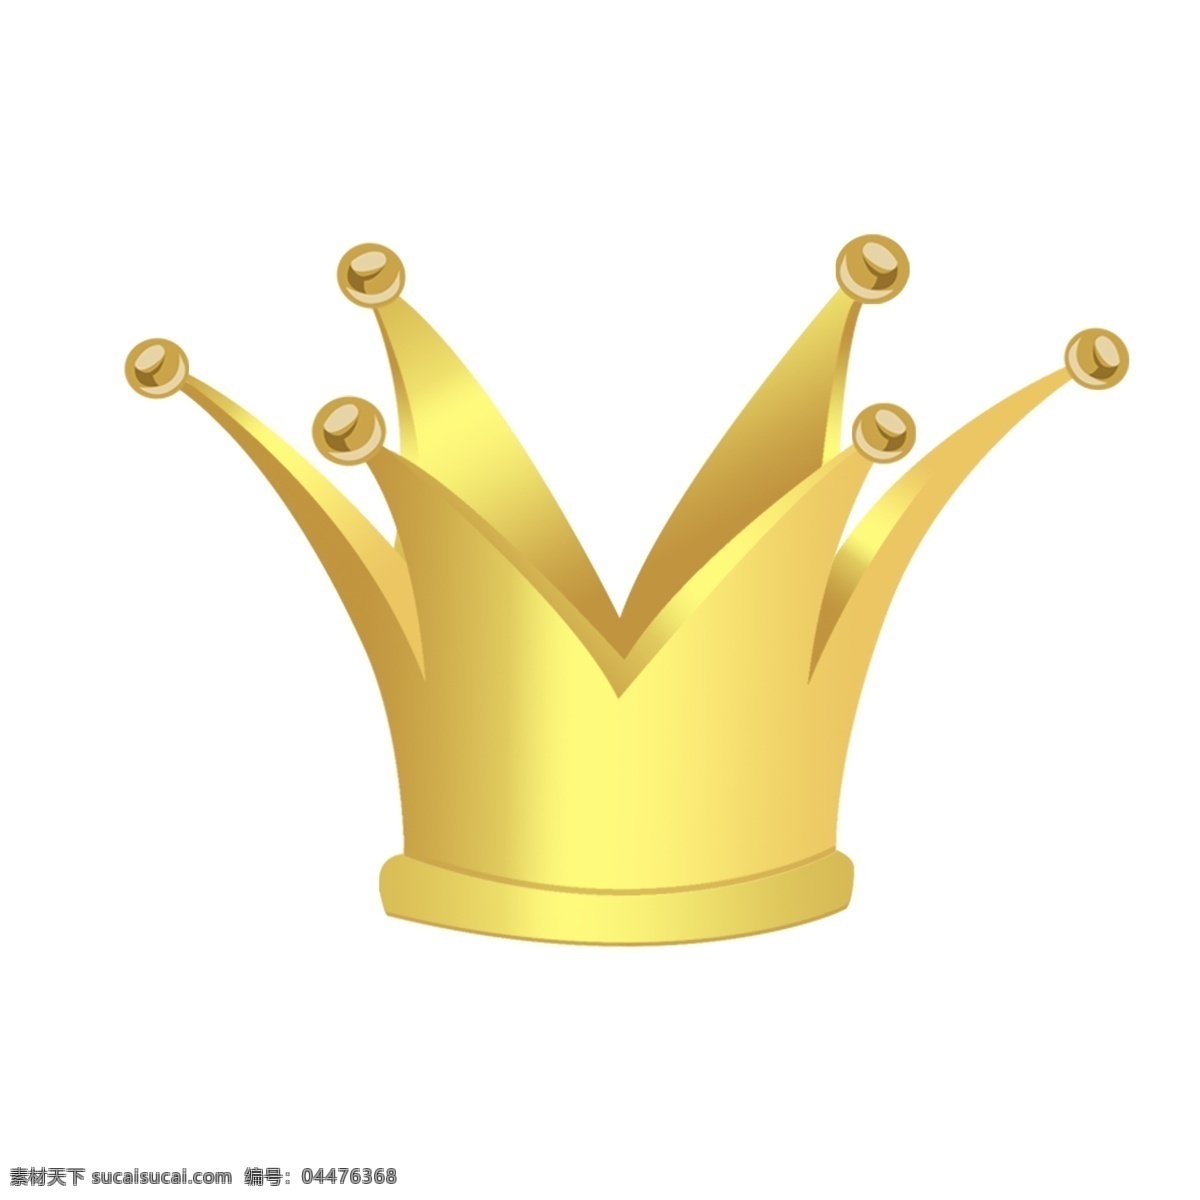 金光闪闪 皇冠 插画 金色的皇冠 皇冠插画 漂亮的皇冠 黄色的皇冠 卡通插画 头饰插画